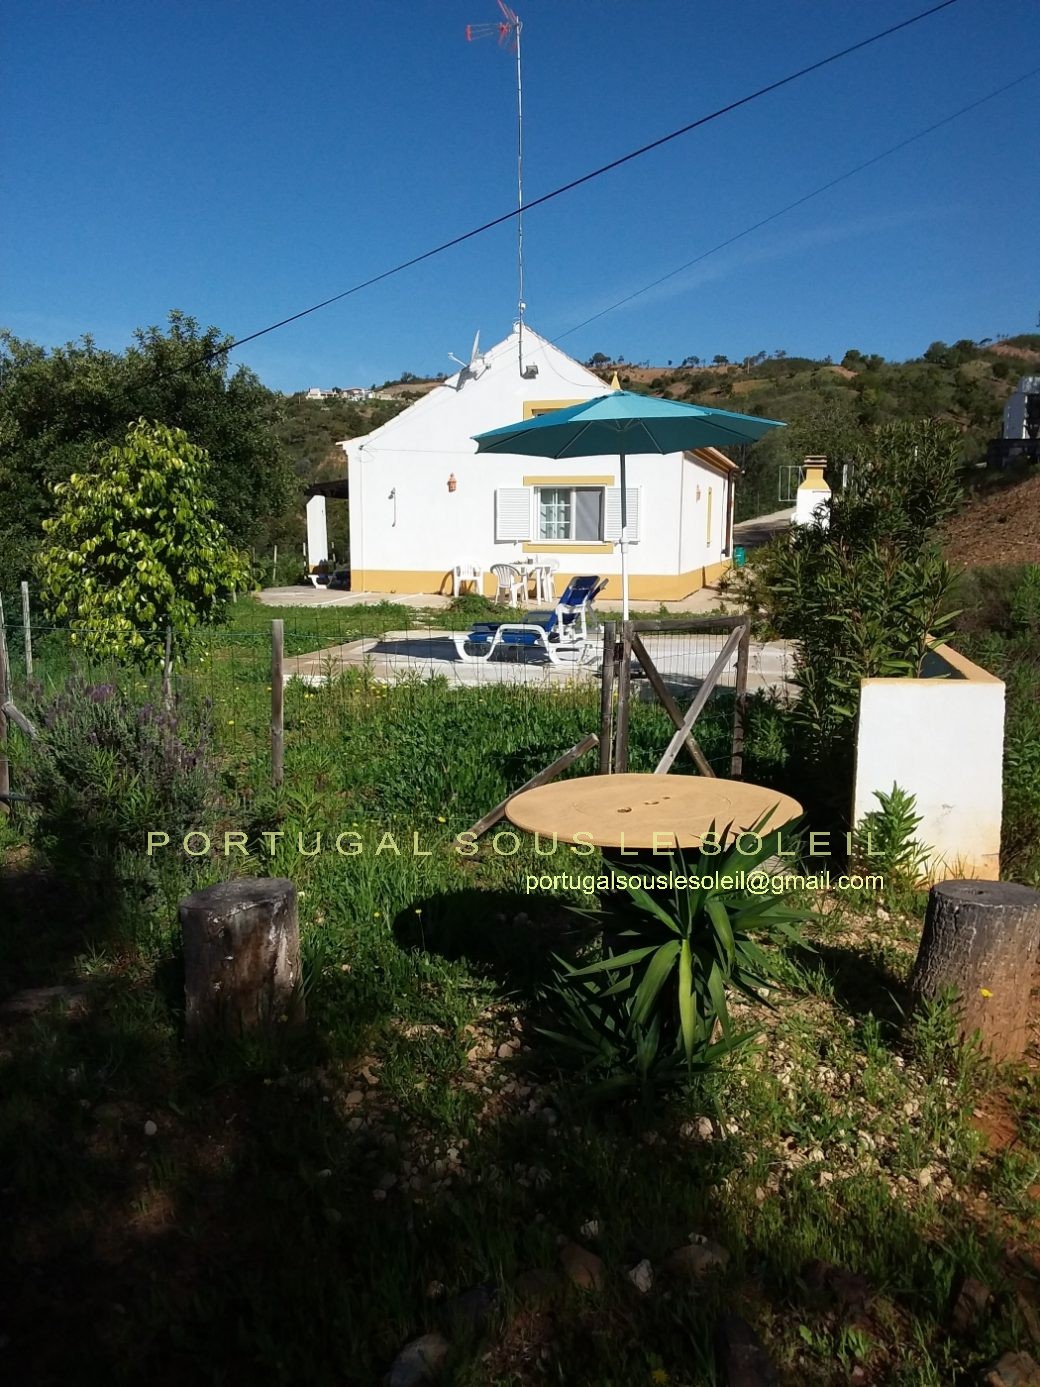 255 Jolie maison de campagne à vendre. Portugal Sous le Soleil, Tavira.10